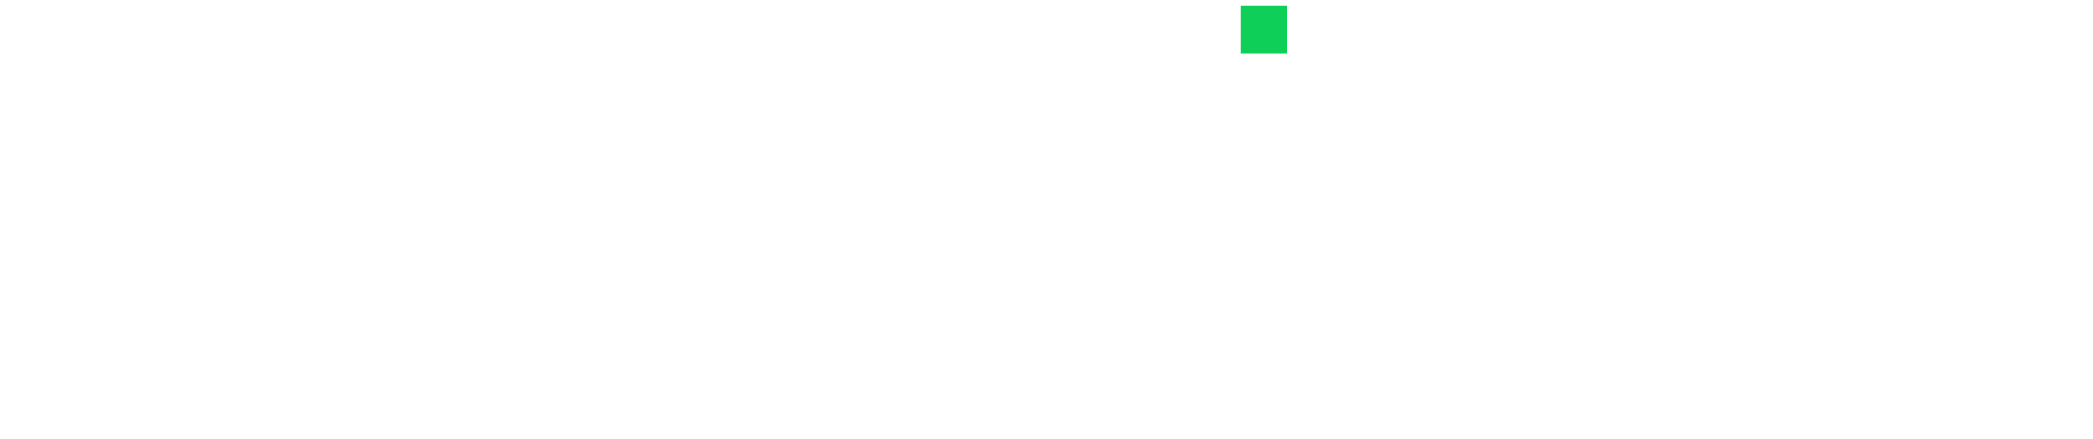 logo-deepsignal